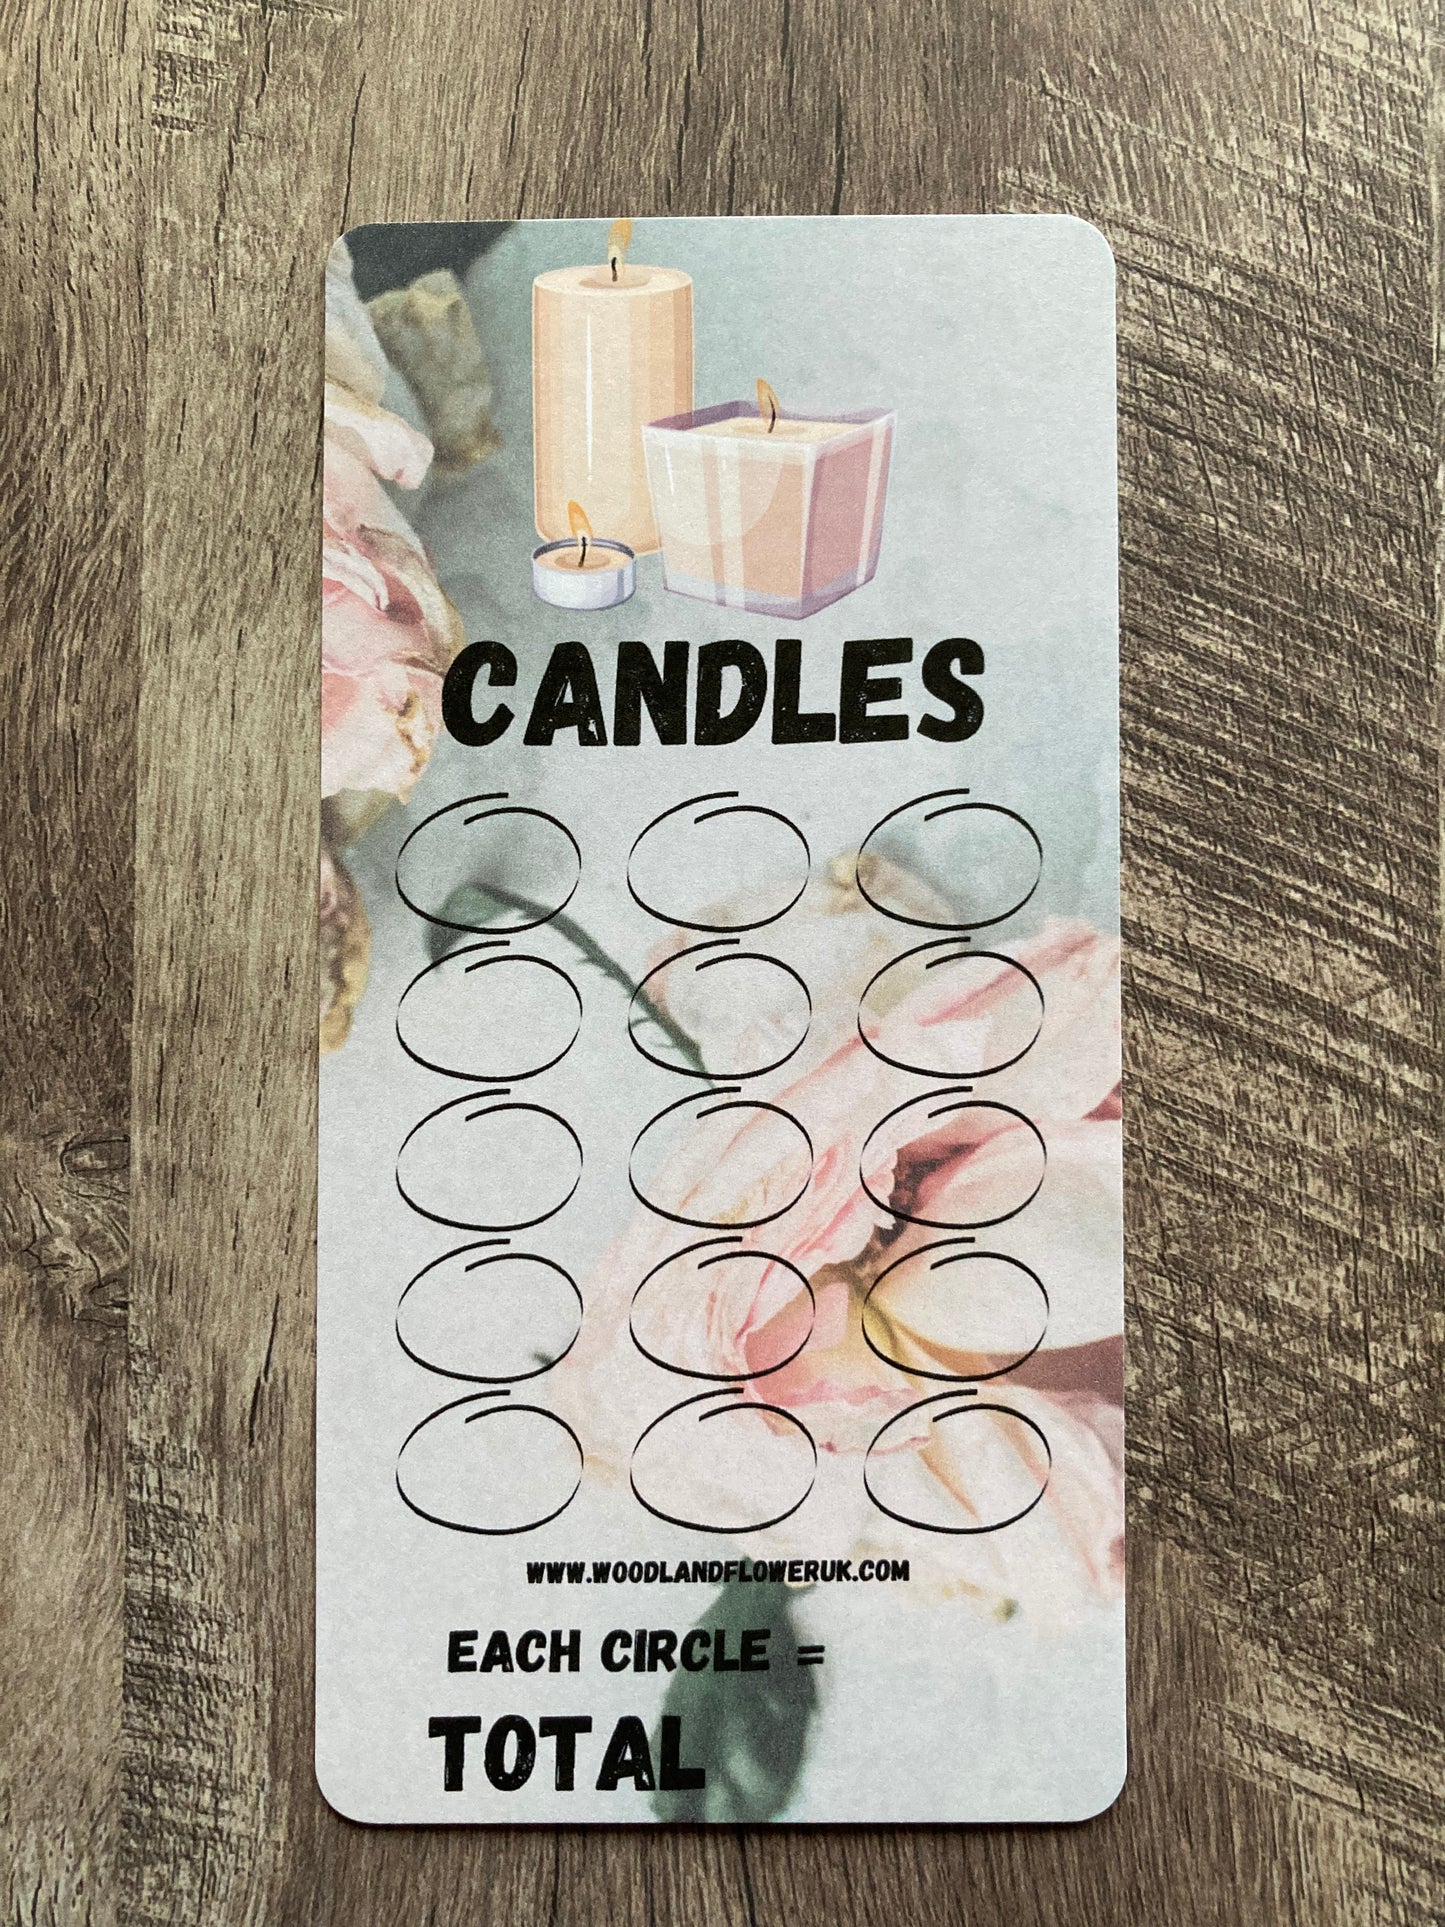 Saving challenge “candles”